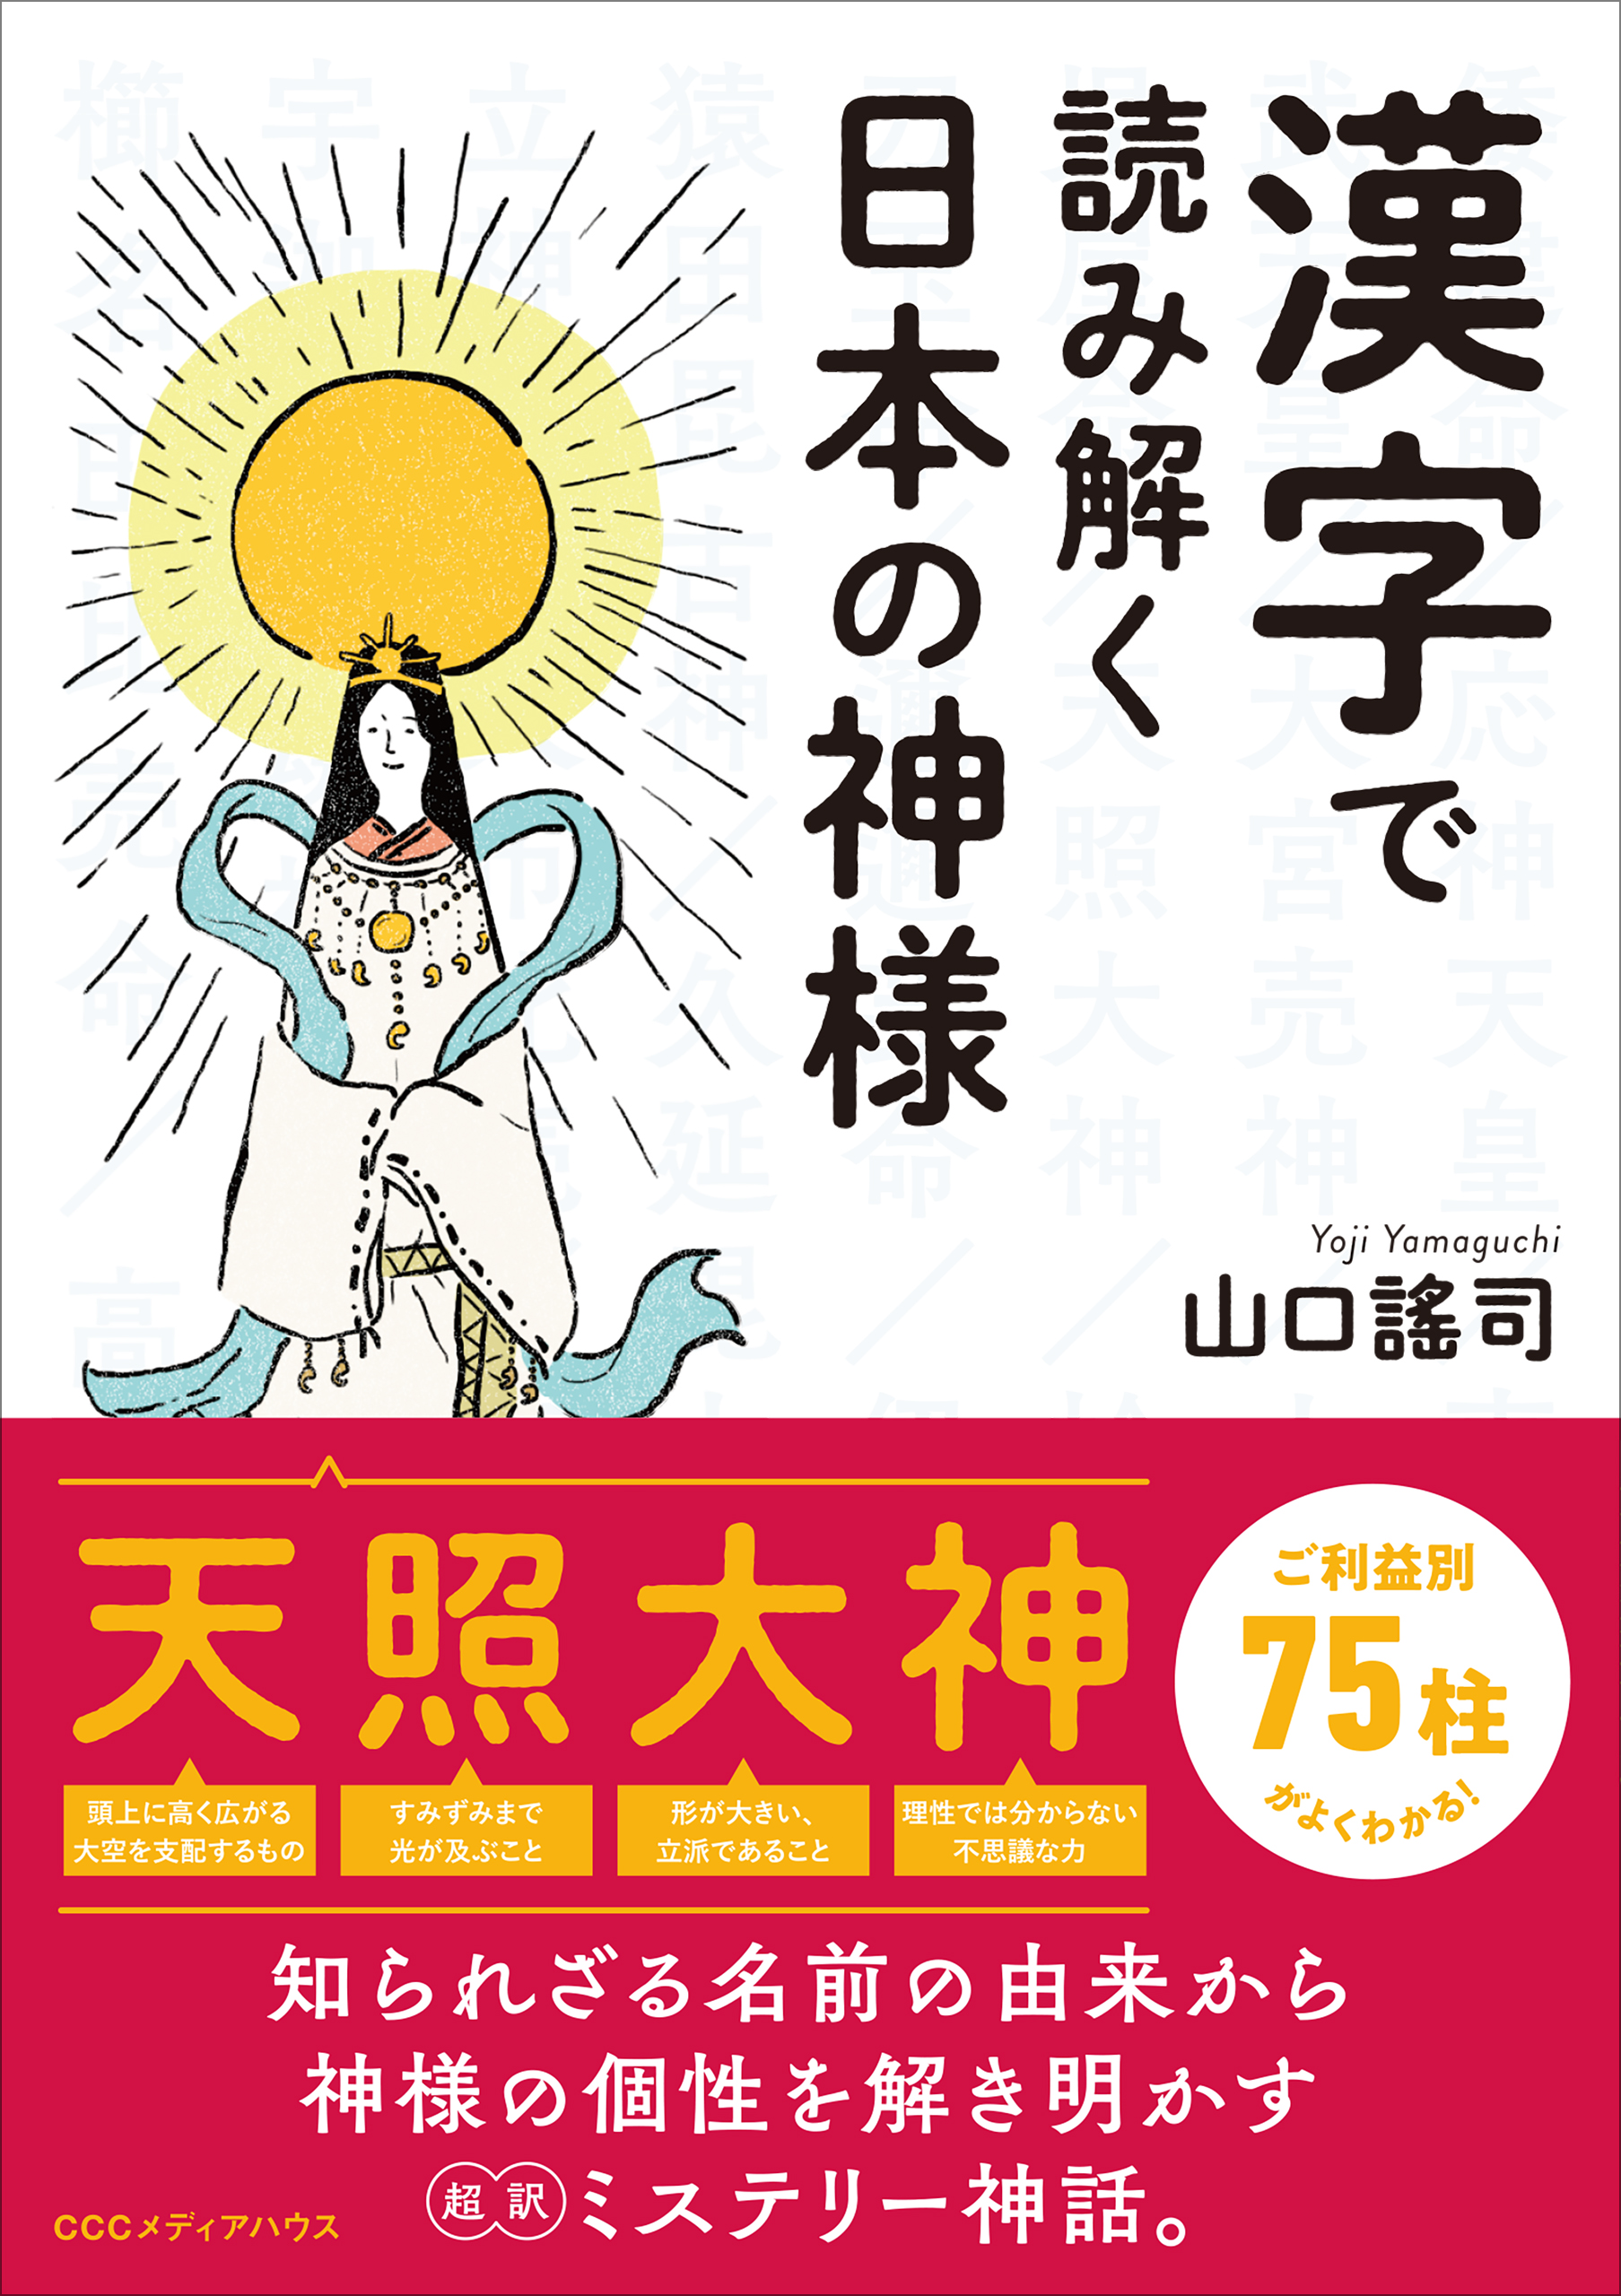 神様の名前に使われている漢字の意味や成り立ちを読み解くことで 神様たちの本当の姿が見えてくる 漢字で読み解く日本 の神様 発売 Cccメディアハウスのプレスリリース